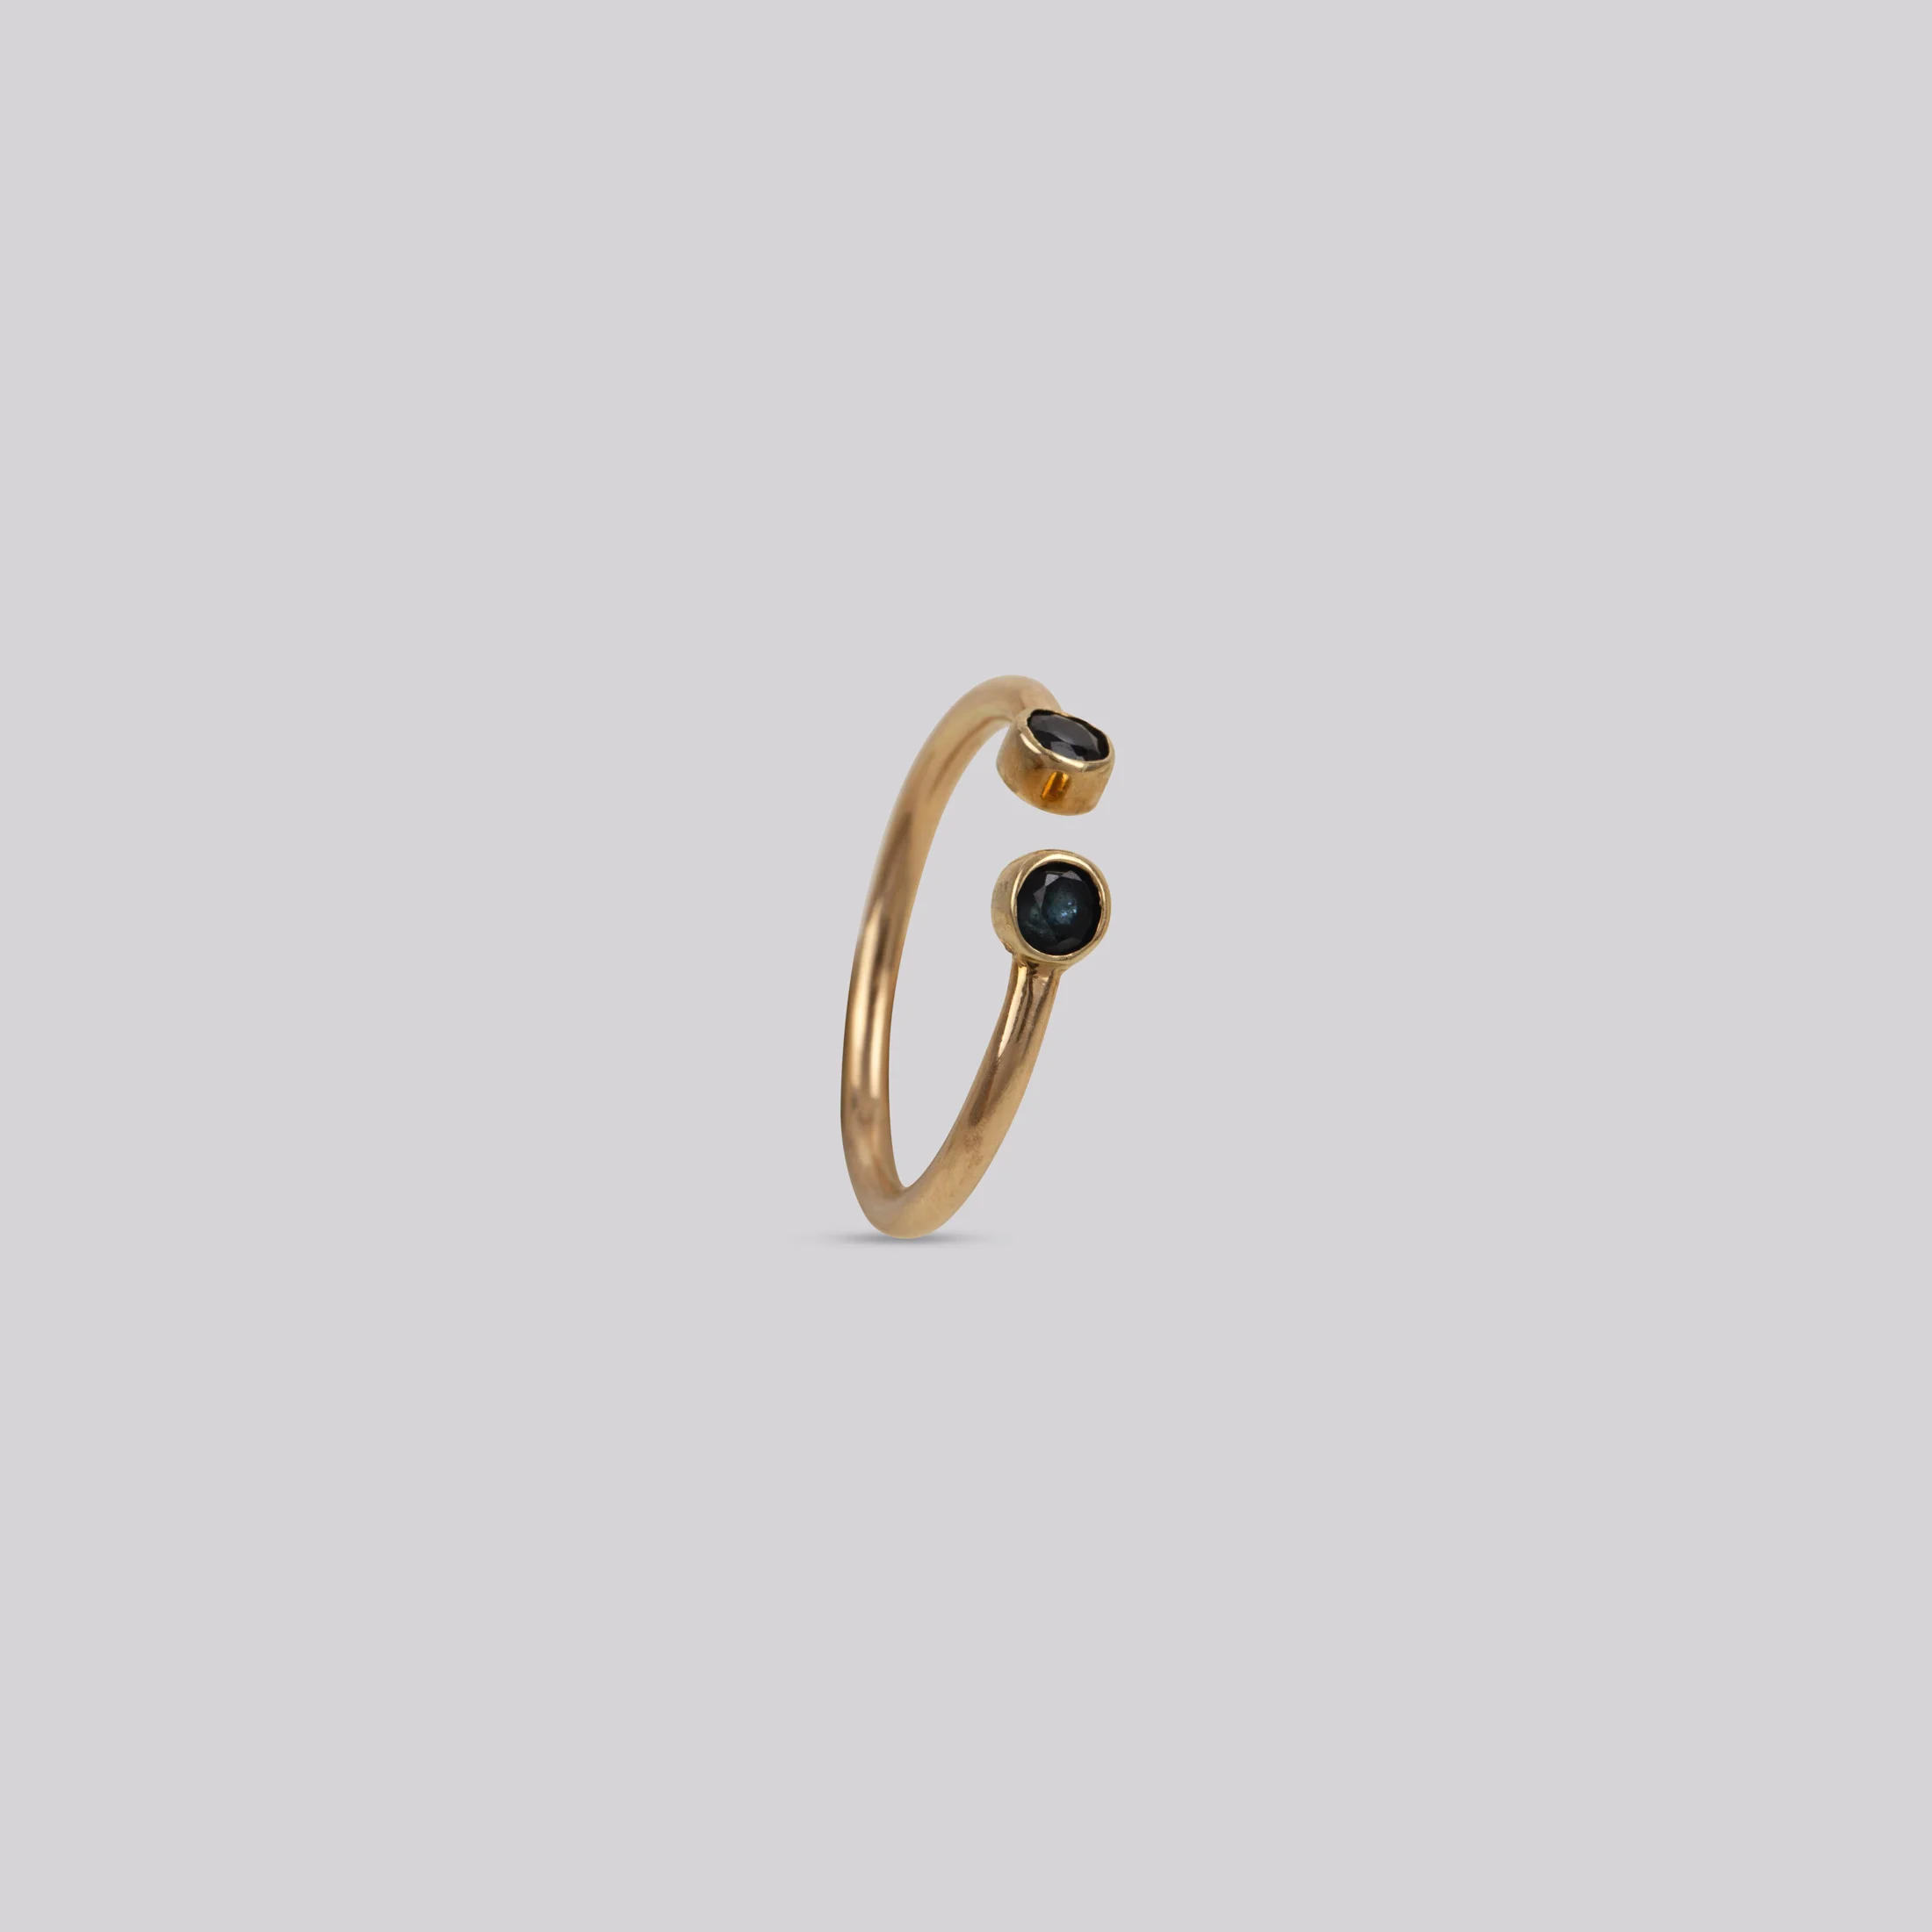 златен пръстен със син сапфир